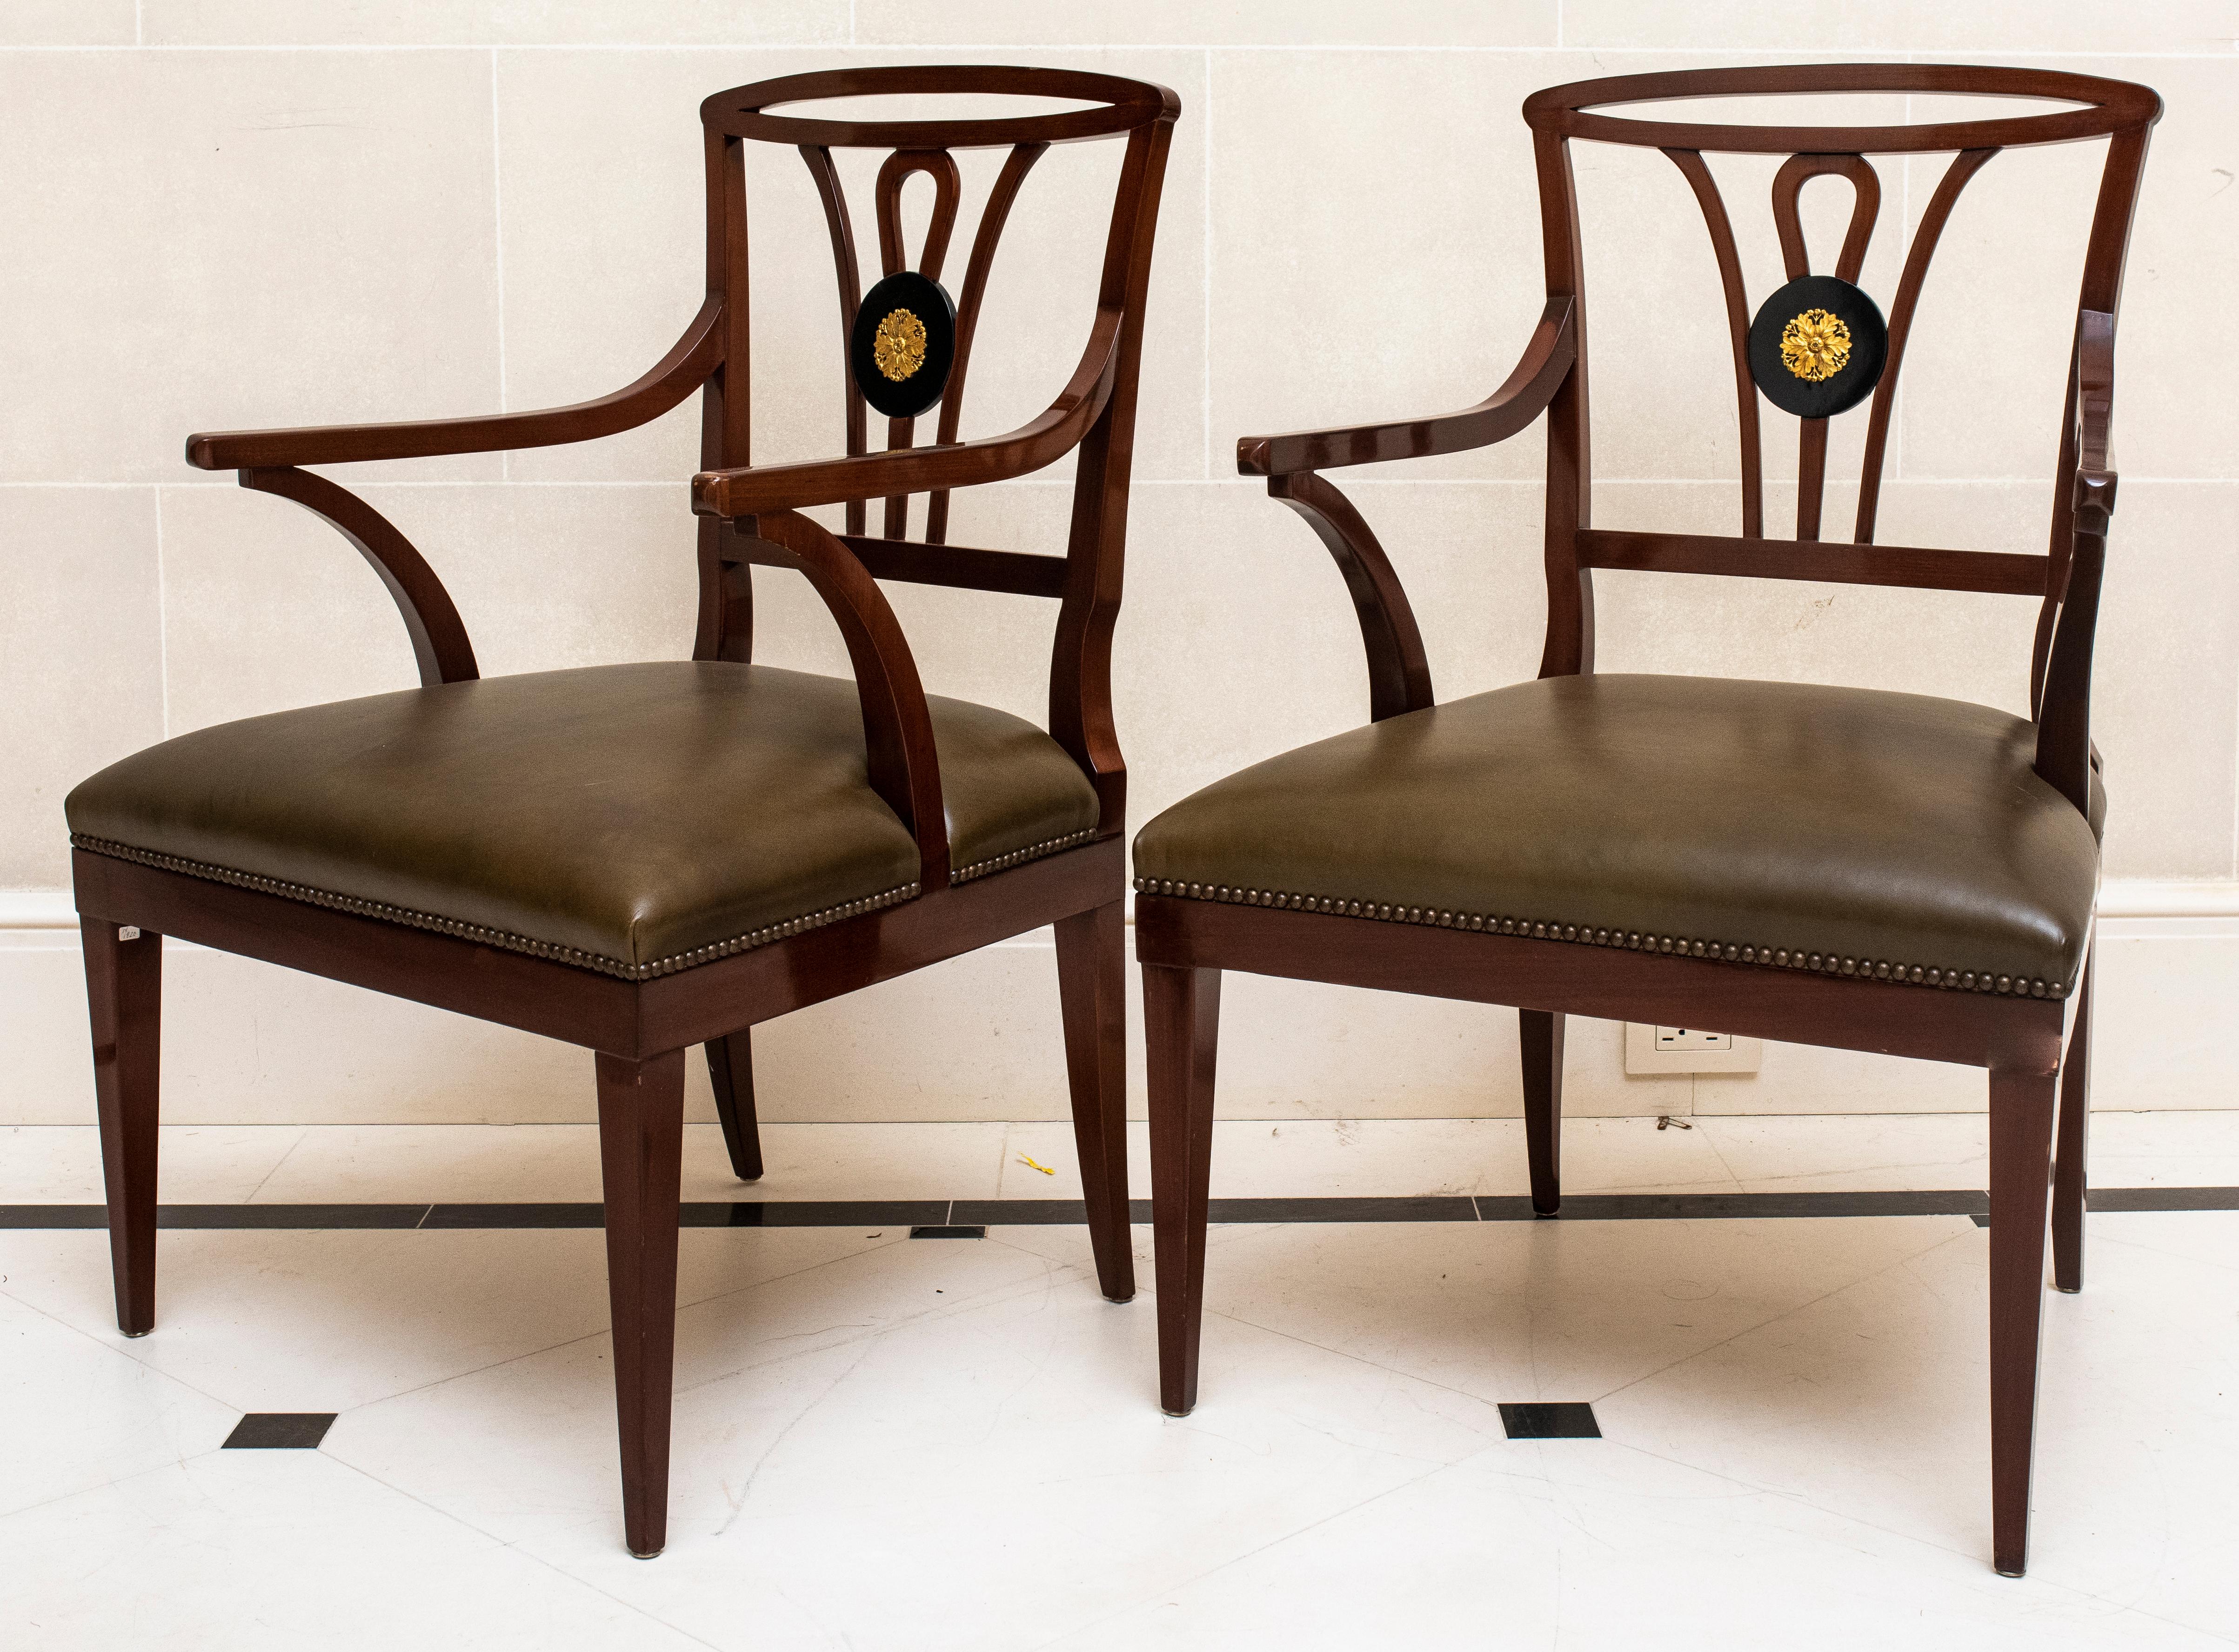 Paire de fauteuils en bois sculpté de style néo-Queen Anne avec siège tapissé de cuir et dossier à médaillon rond ébonisé avec rosette en bronze doré. 

Concessionnaire : S138XX